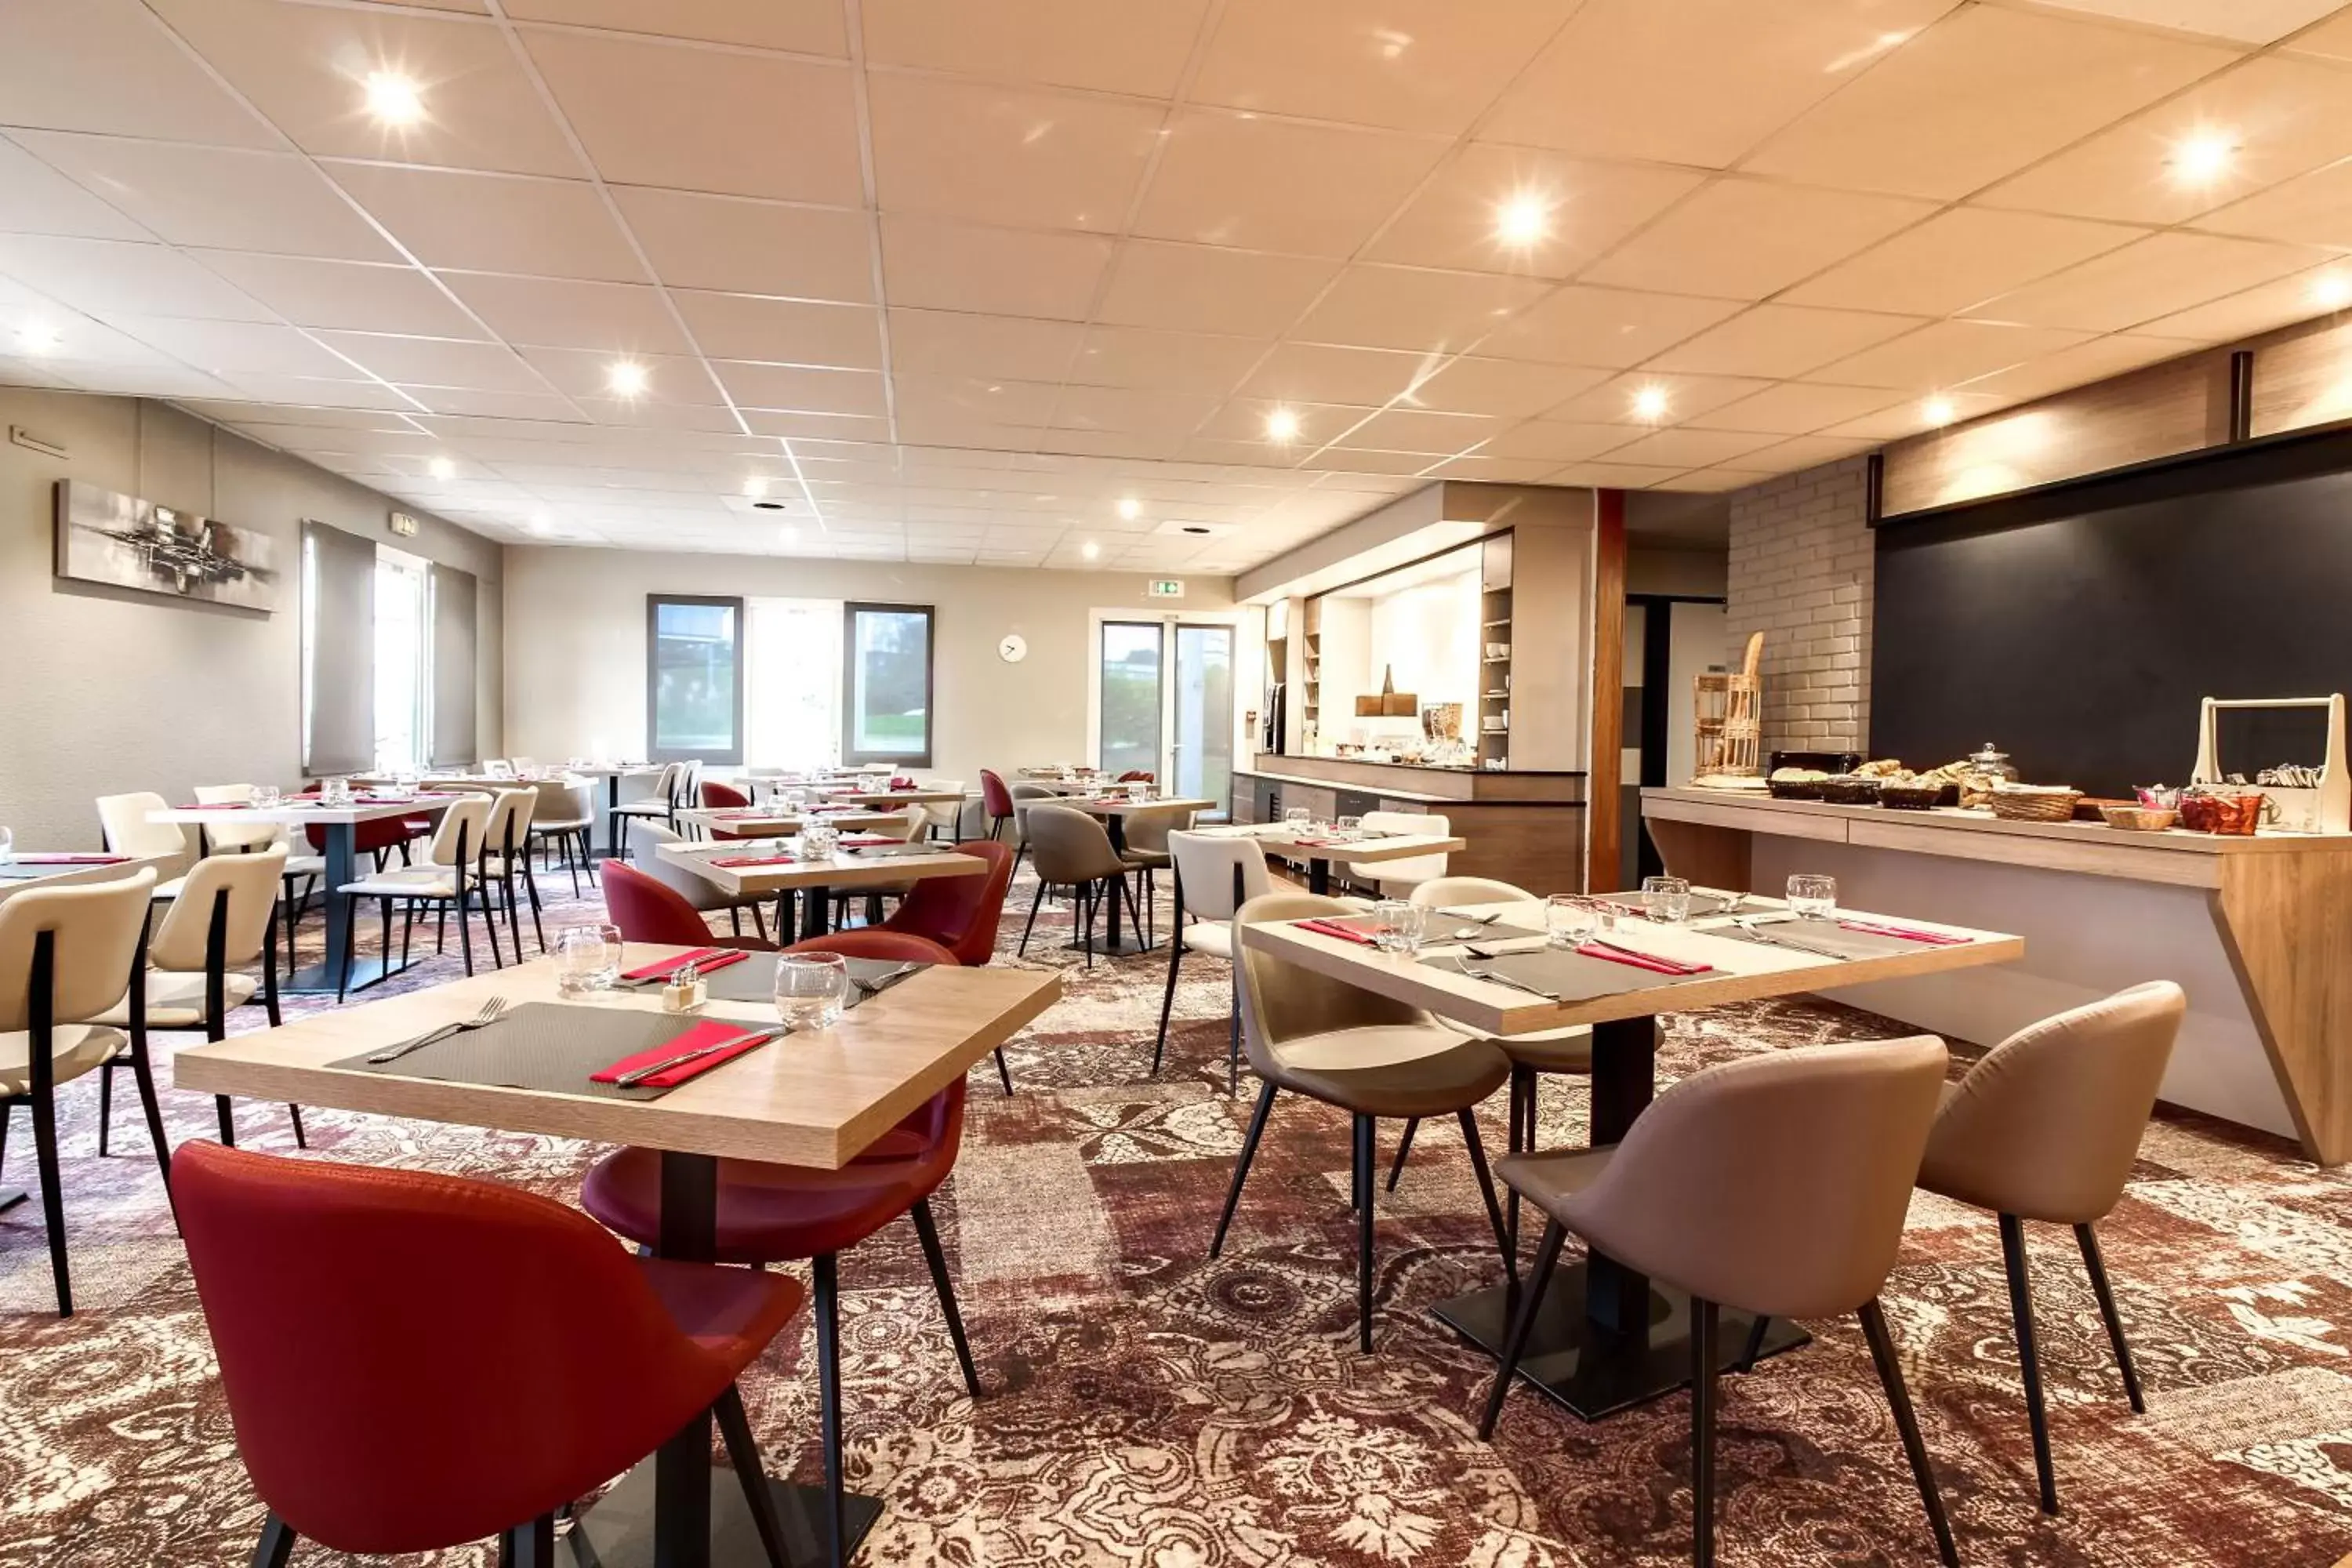 Restaurant/Places to Eat in Brit Hotel Brest Le Relecq Kerhuon